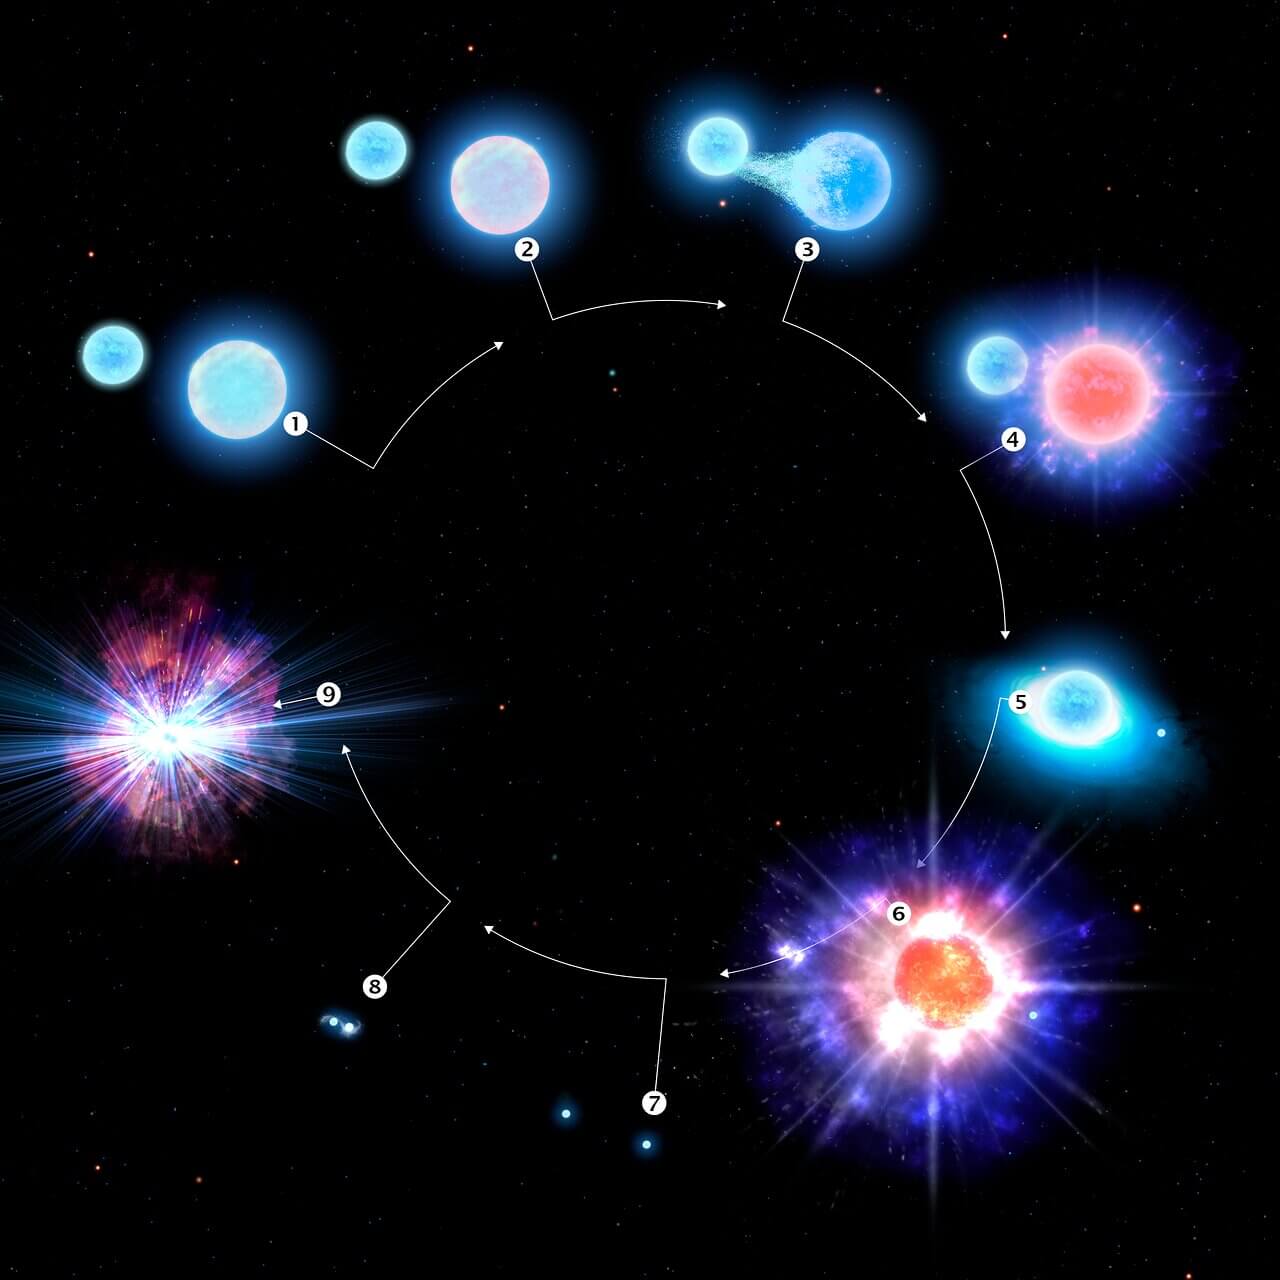 Evolution of a binary star system into a kilonova explosion